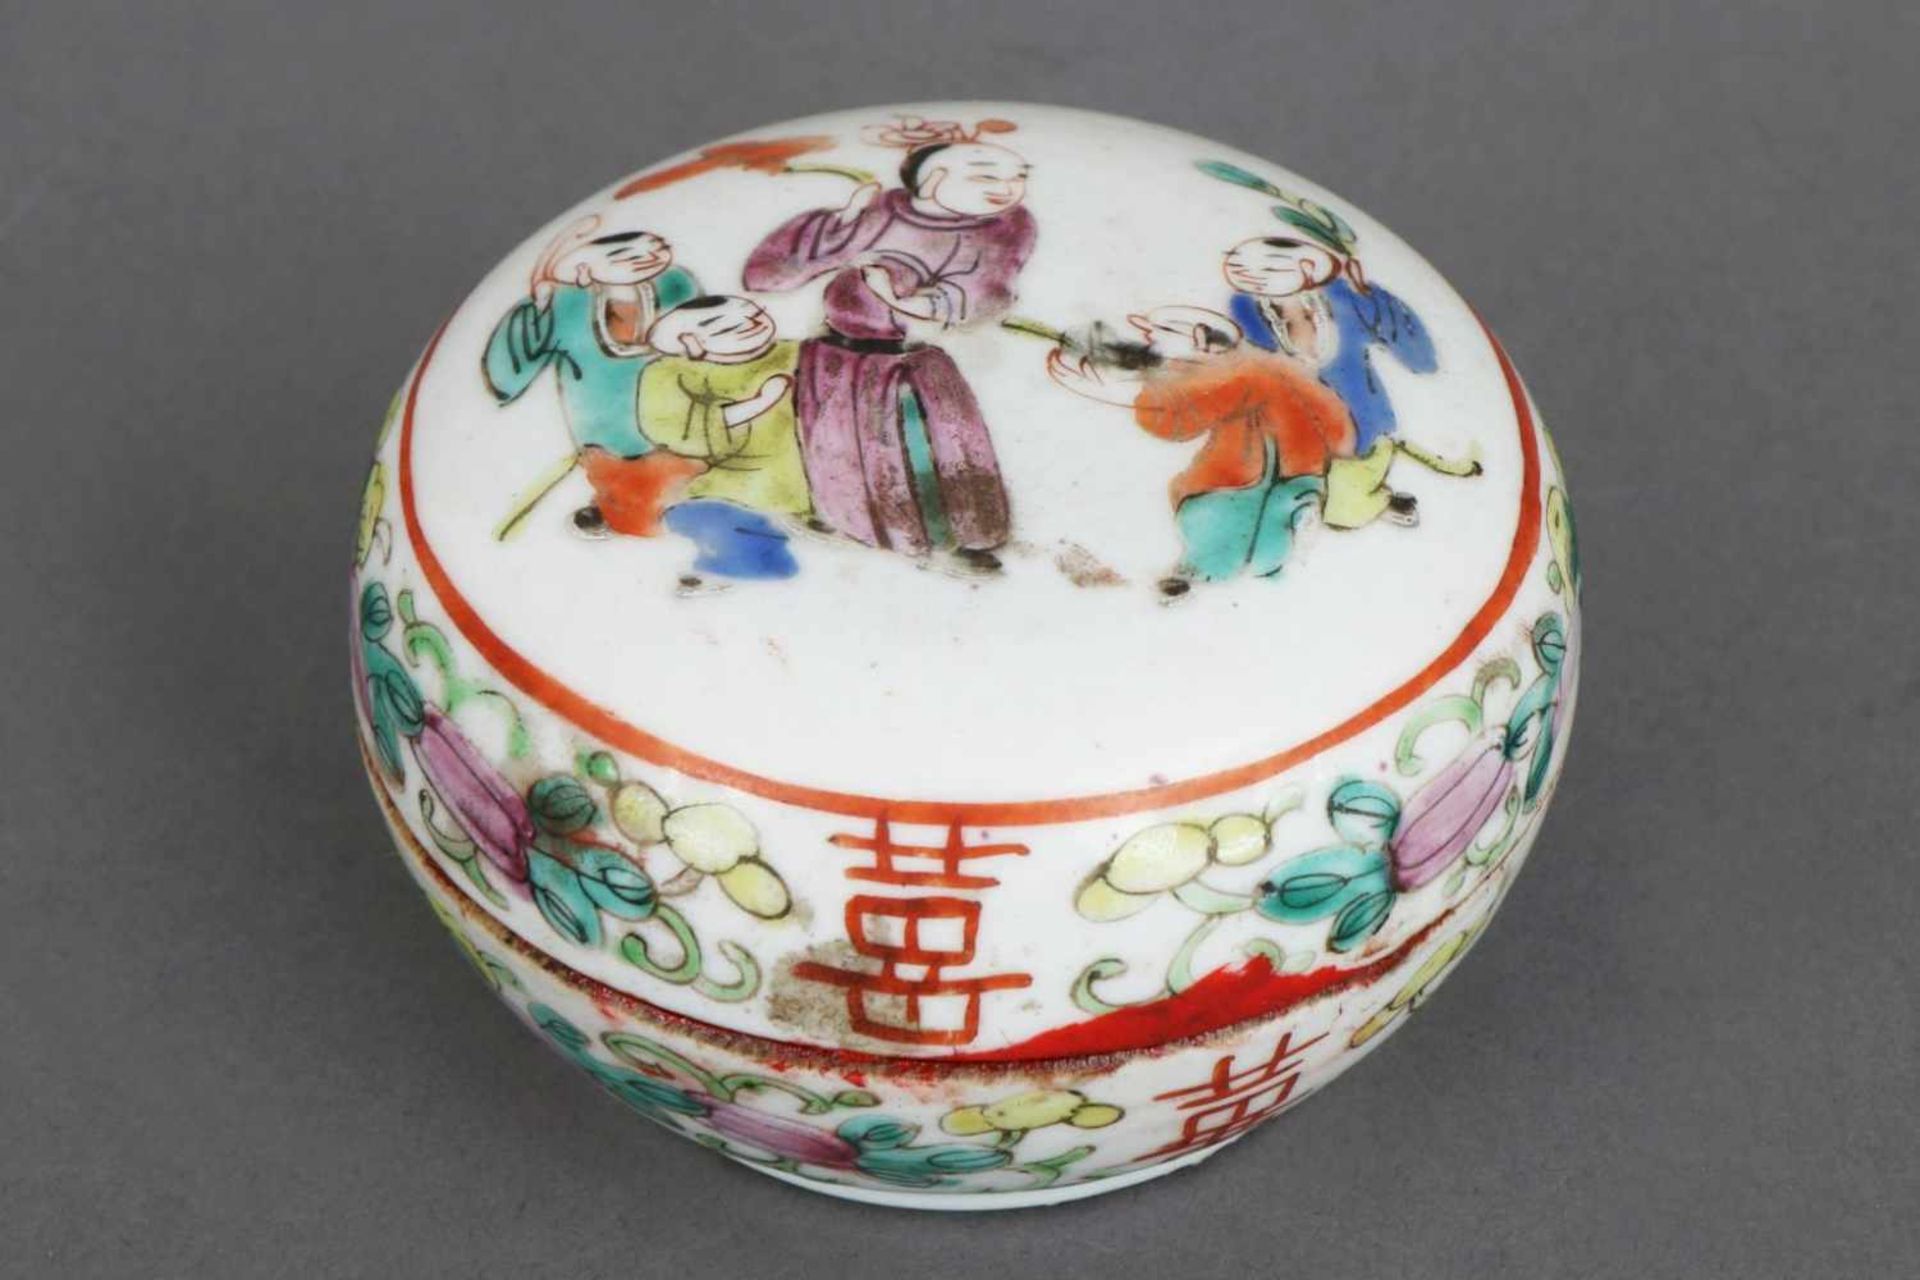 Chinesische SiegeldosePorzellan, Qing Dynastie (1644-1912, hier wohl Chien-Lung), runde ¨